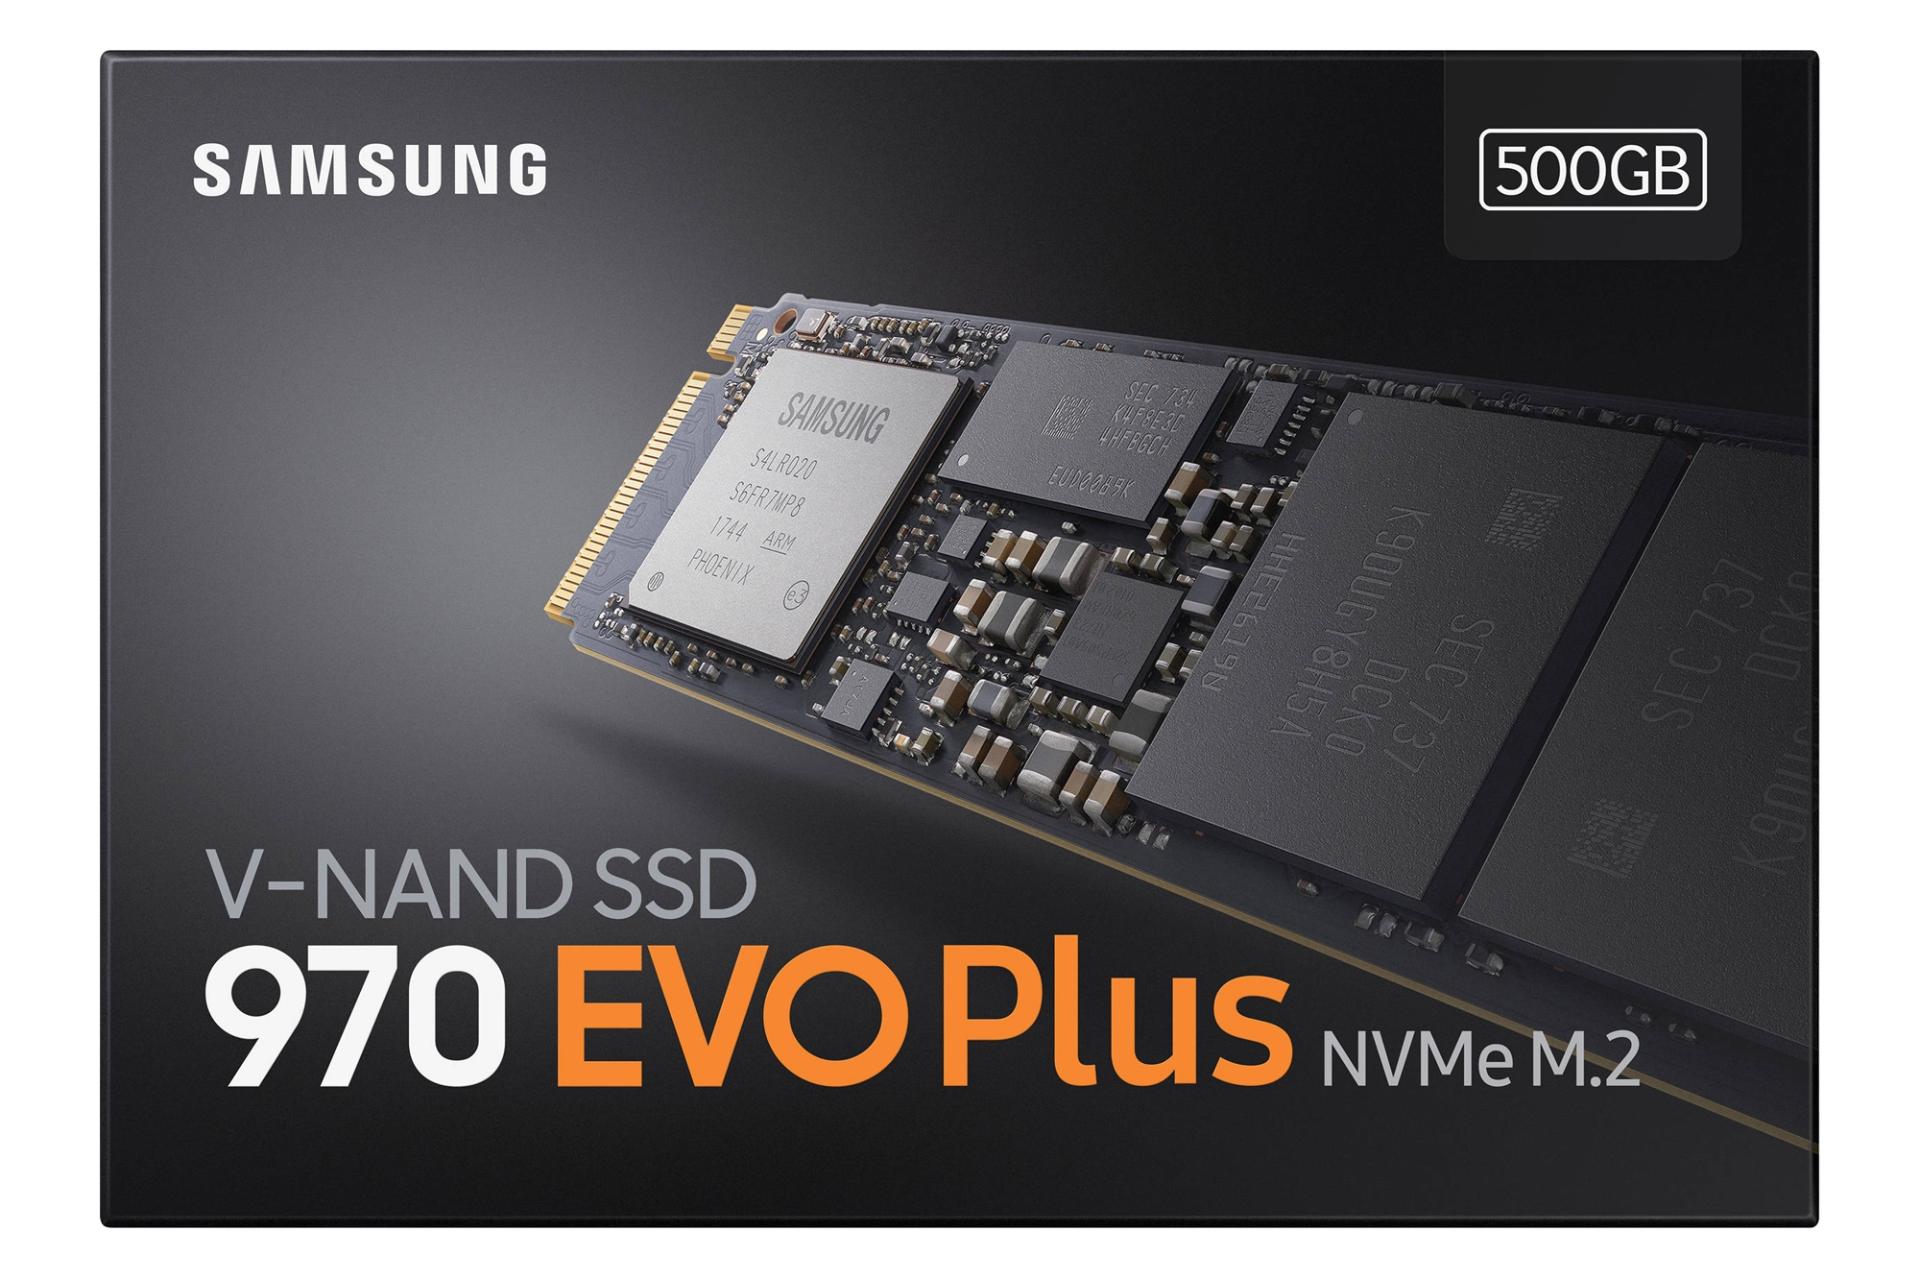 جعبه SSD سامسونگ Samsung 970 EVO Plus NVMe M.2 500GB ظرفیت 500 گیگابایت